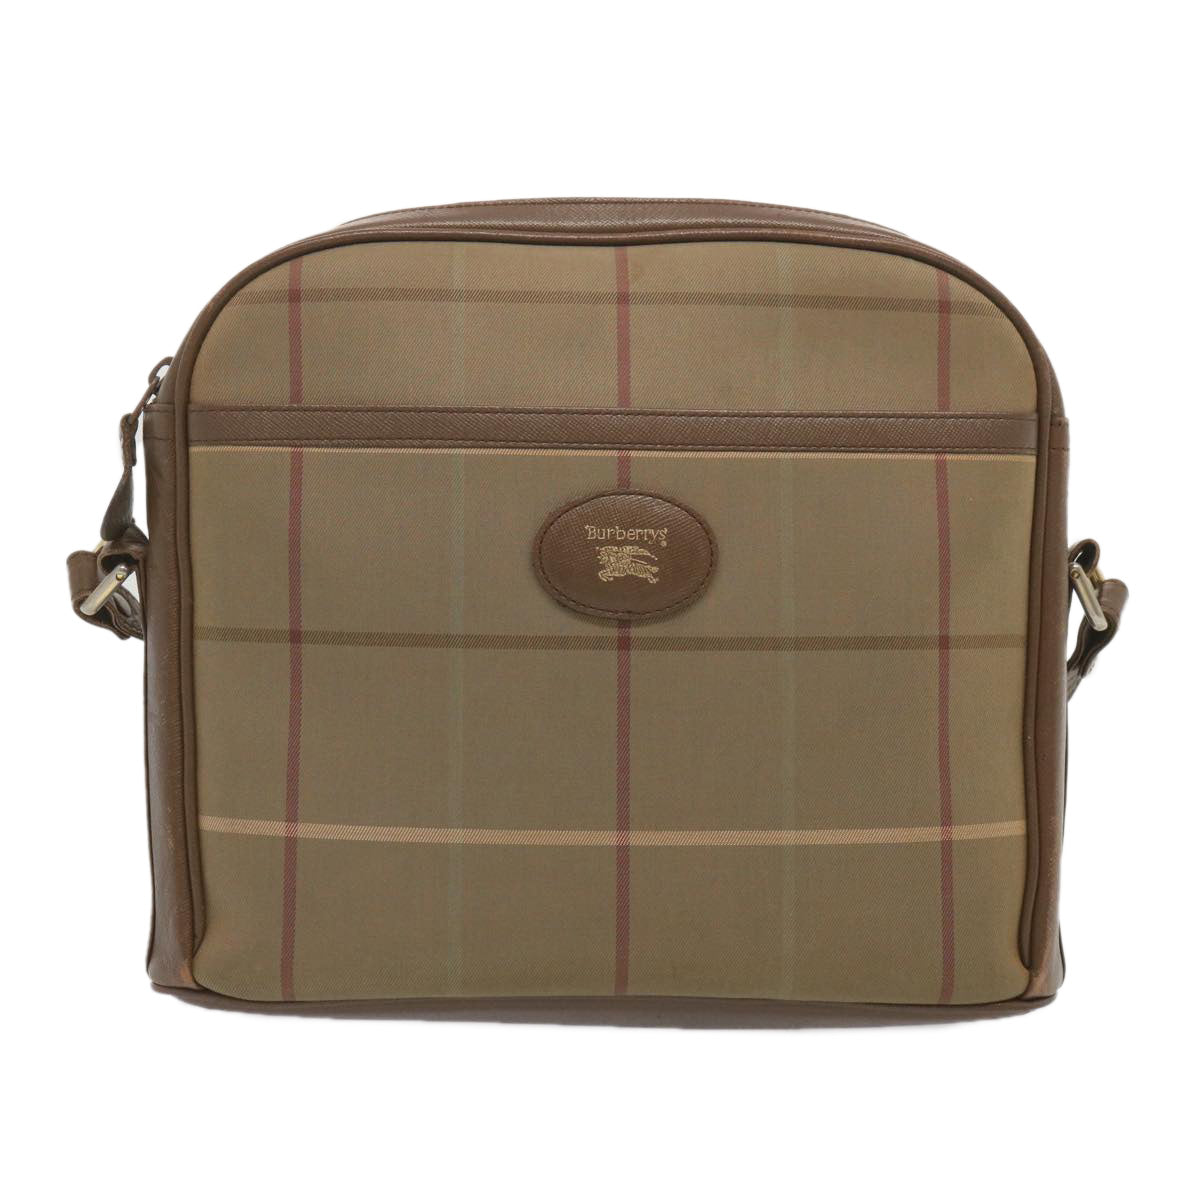 Burberrys Nova Check Shoulder Bag Canvas Beige Auth 69572 - 0